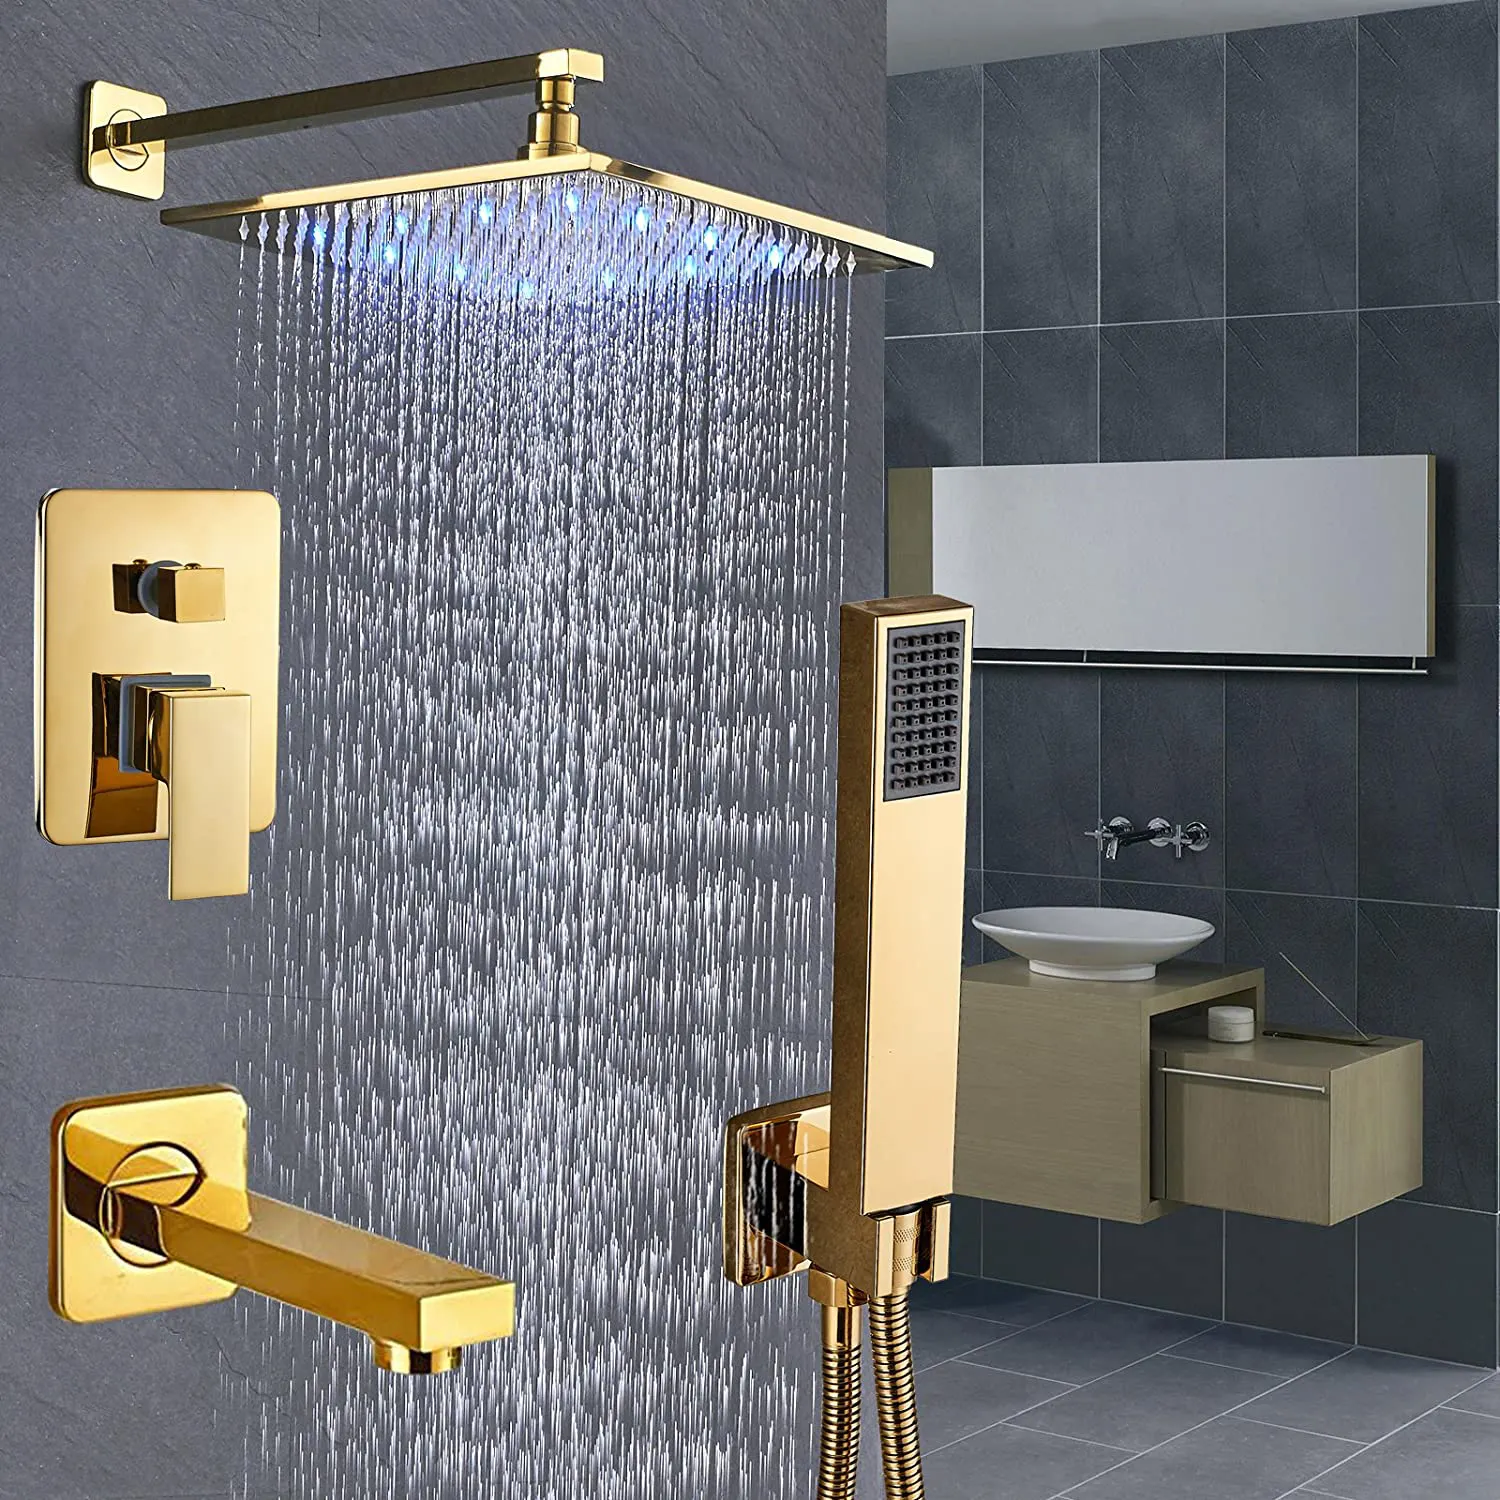 ชุดฝักบัวระบบอาบน้ำแปรงทอง LED 12นิ้ว,หัวฝักบัวเรนชาวเวอร์ทองเหลืองพร้อมชุดคอมโบแบบมือถือ